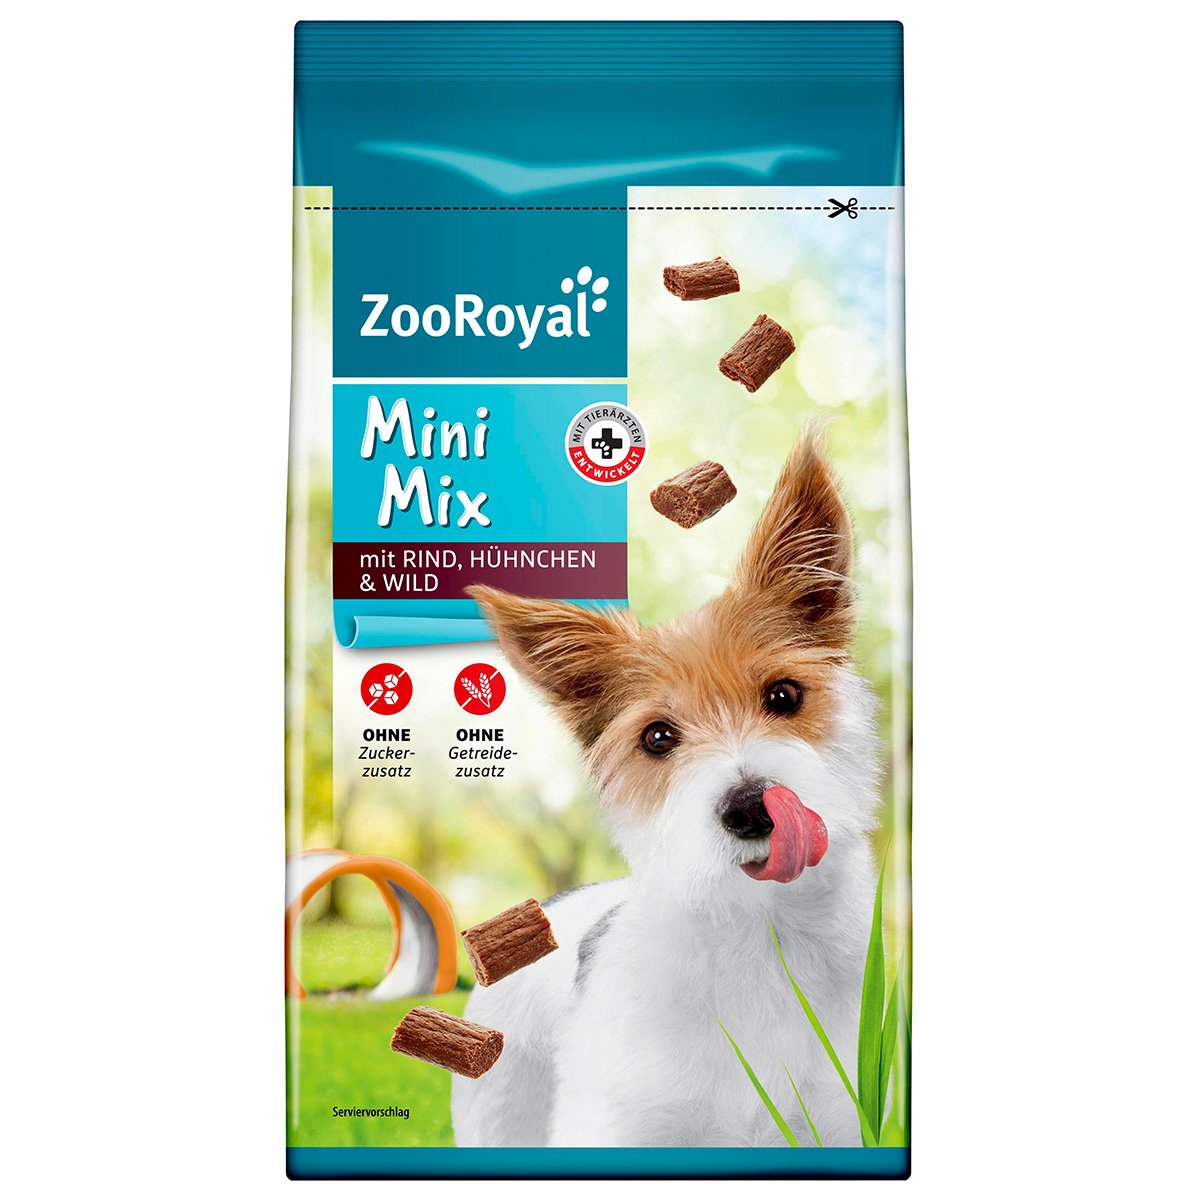 ZooRoyal Mini Mix mit Rind